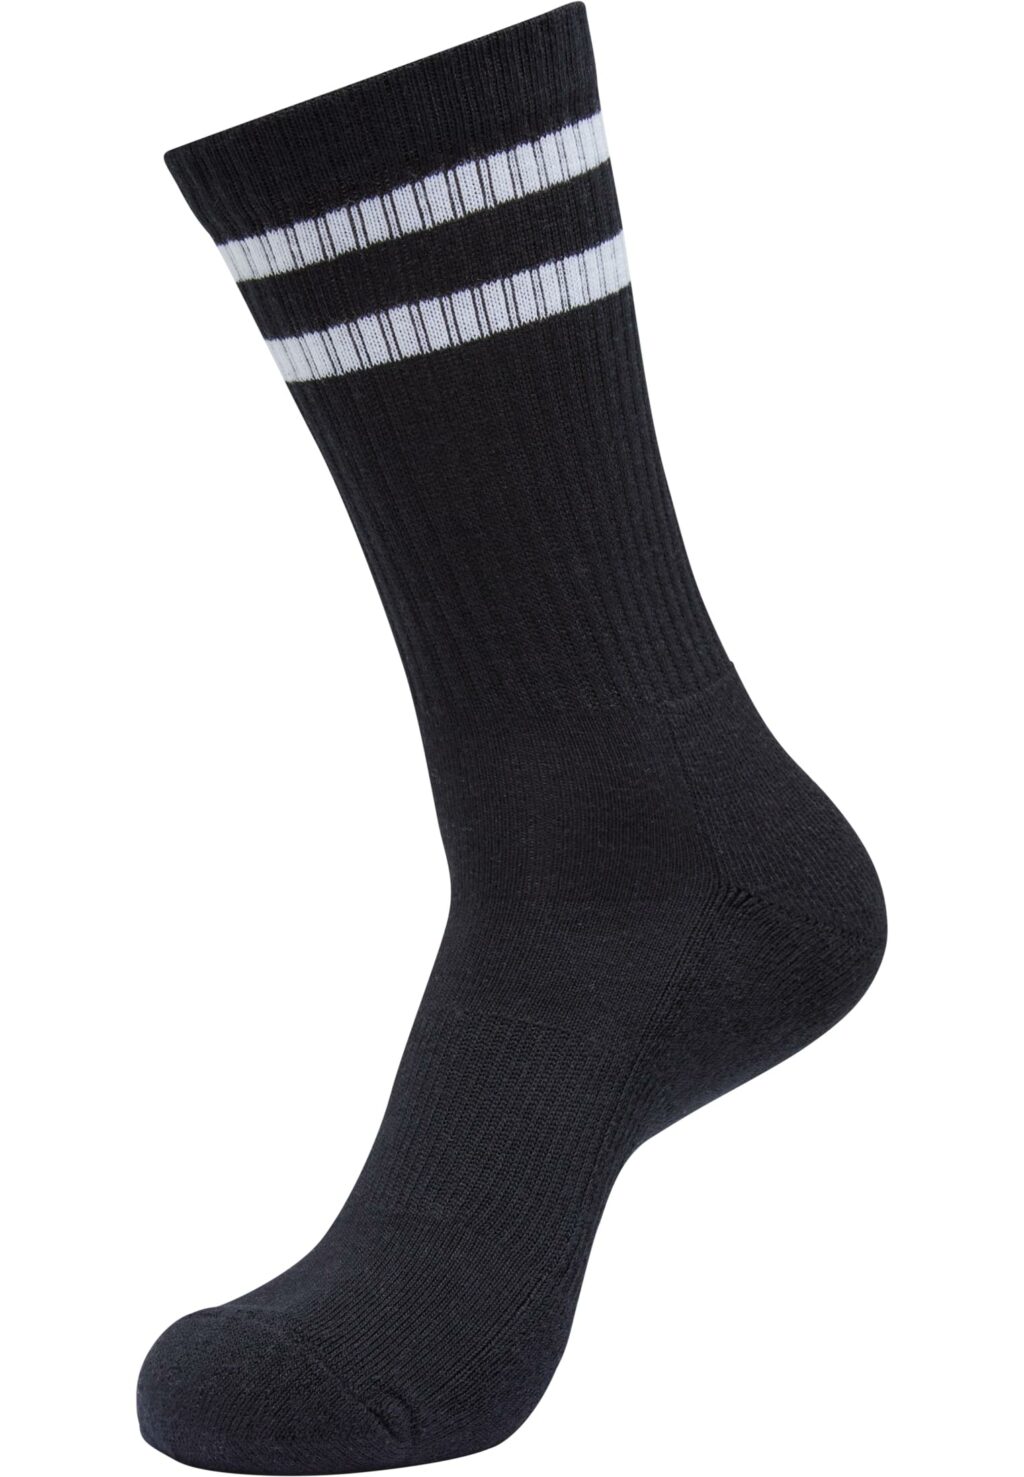 Double Stripe Socks 5-Pack black/white TB6801